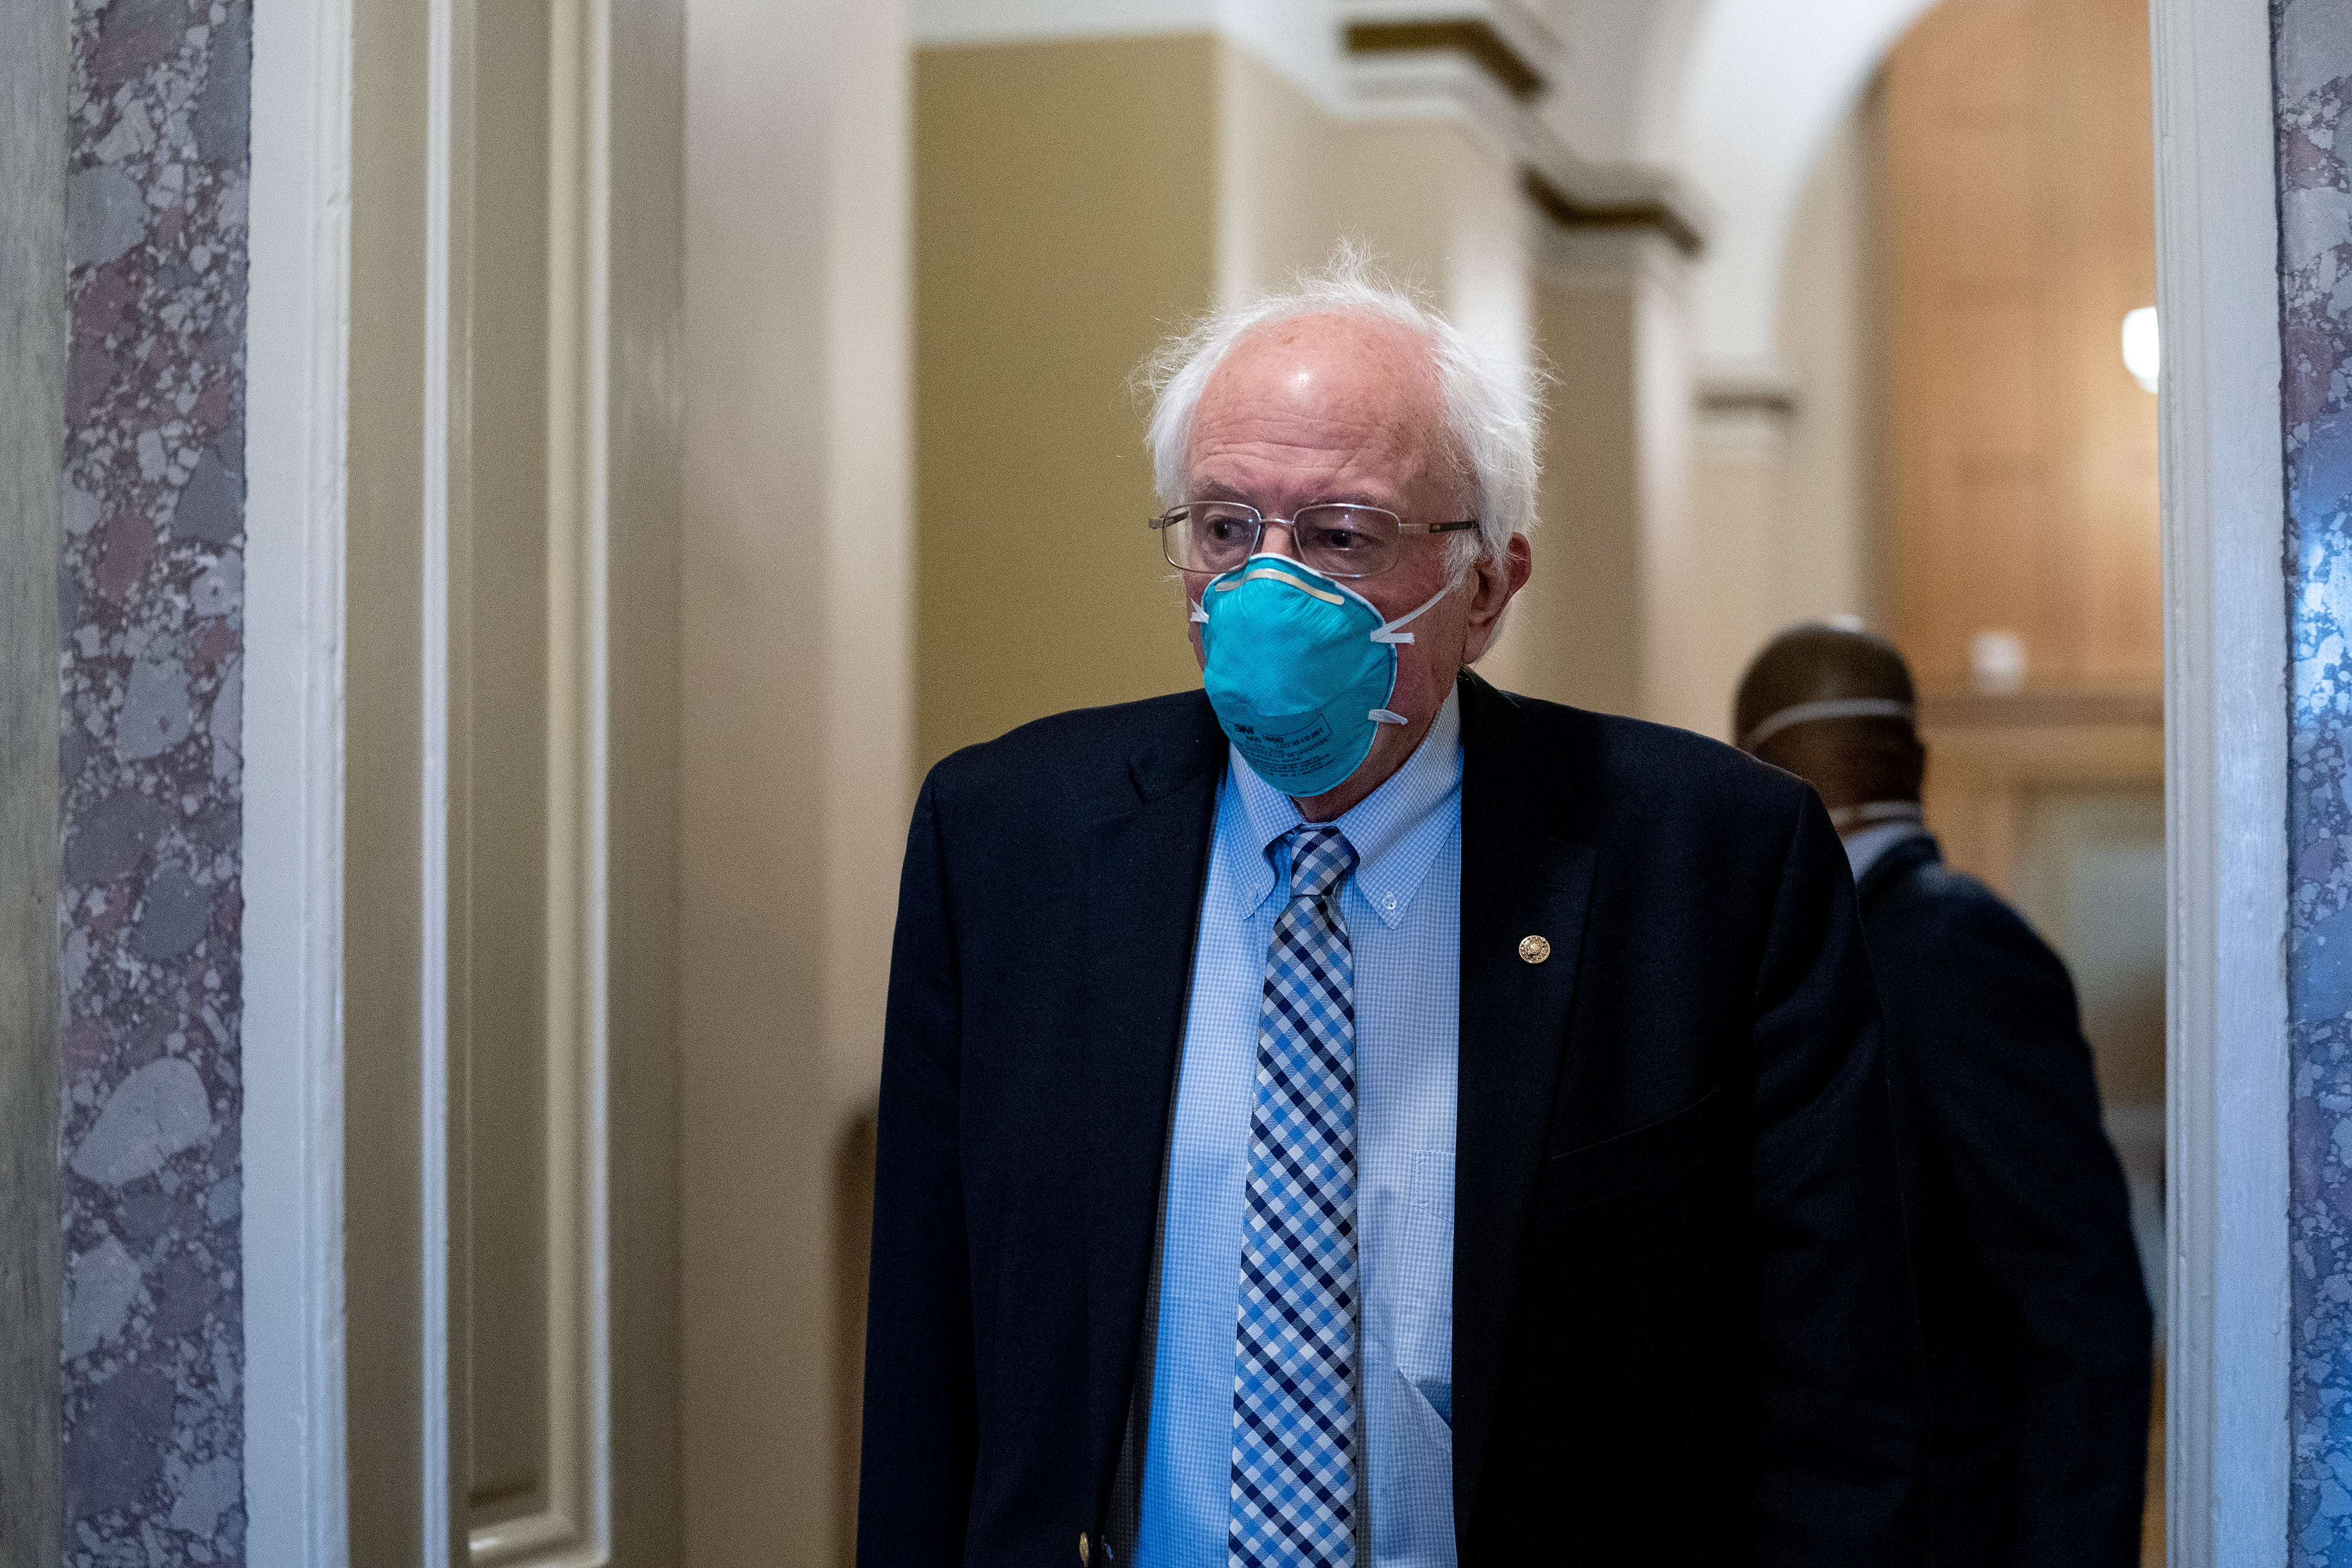 WASHINGTON, DC - 11 DE DICIEMBRE: El senador Bernie Sanders (I-VT) usa una máscara protectora al salir del Capitolio de los EE. UU. el 11 de diciembre de 2020 en Washington, DC. Los legisladores se enfrentan a un plazo de medianoche para aprobar una resolución continua para evitar un cierre parcial y financiar al gobierno durante otra semana.